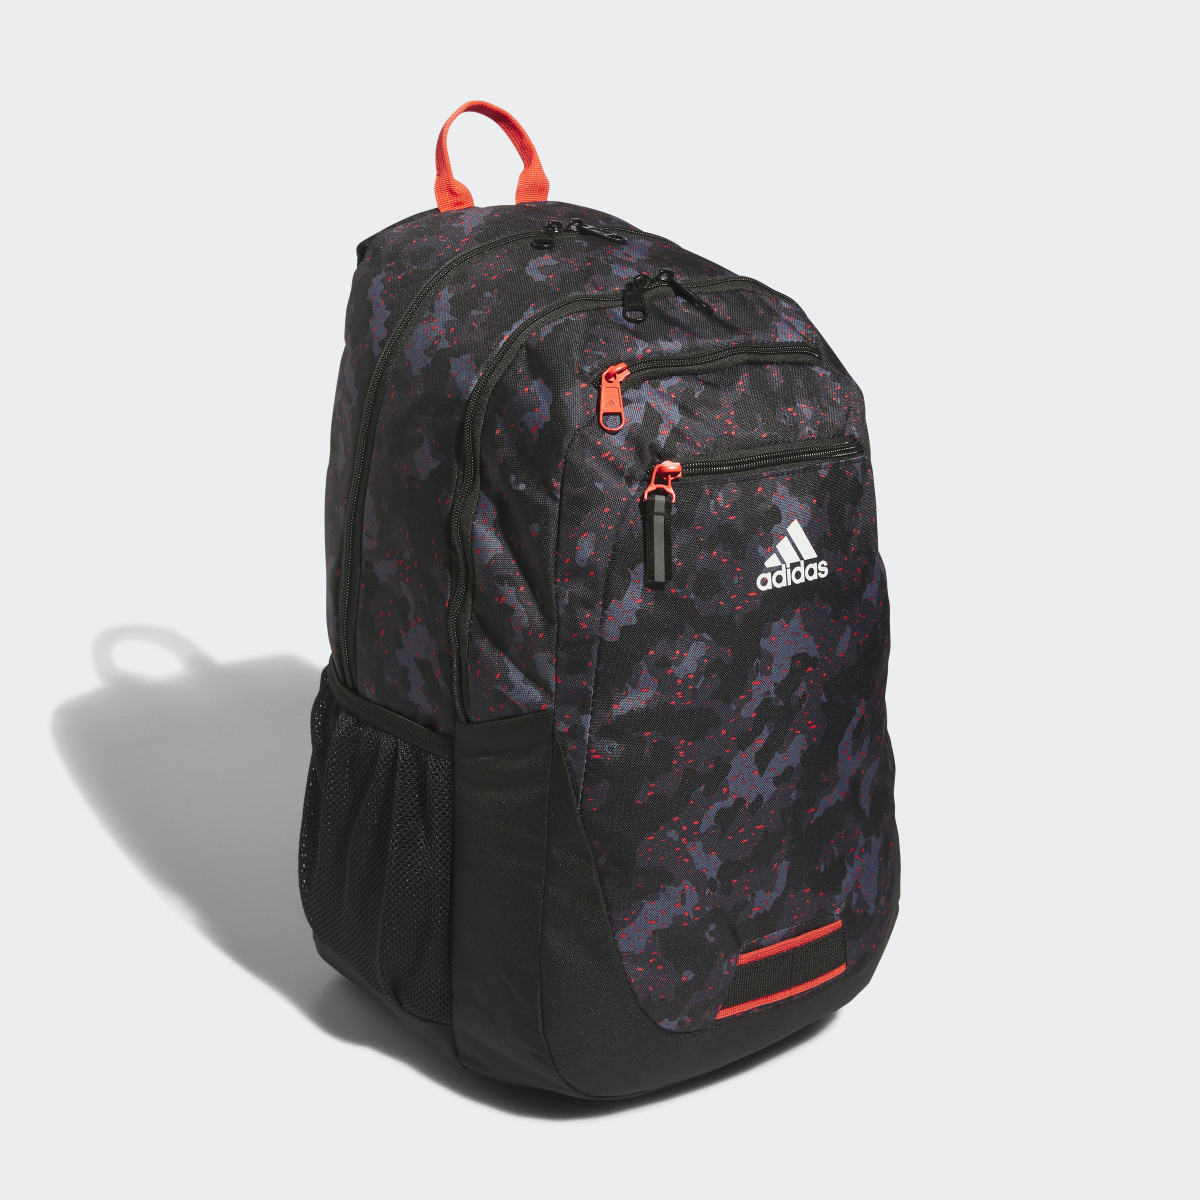 Adidas Foundation 6 Backpack. 4